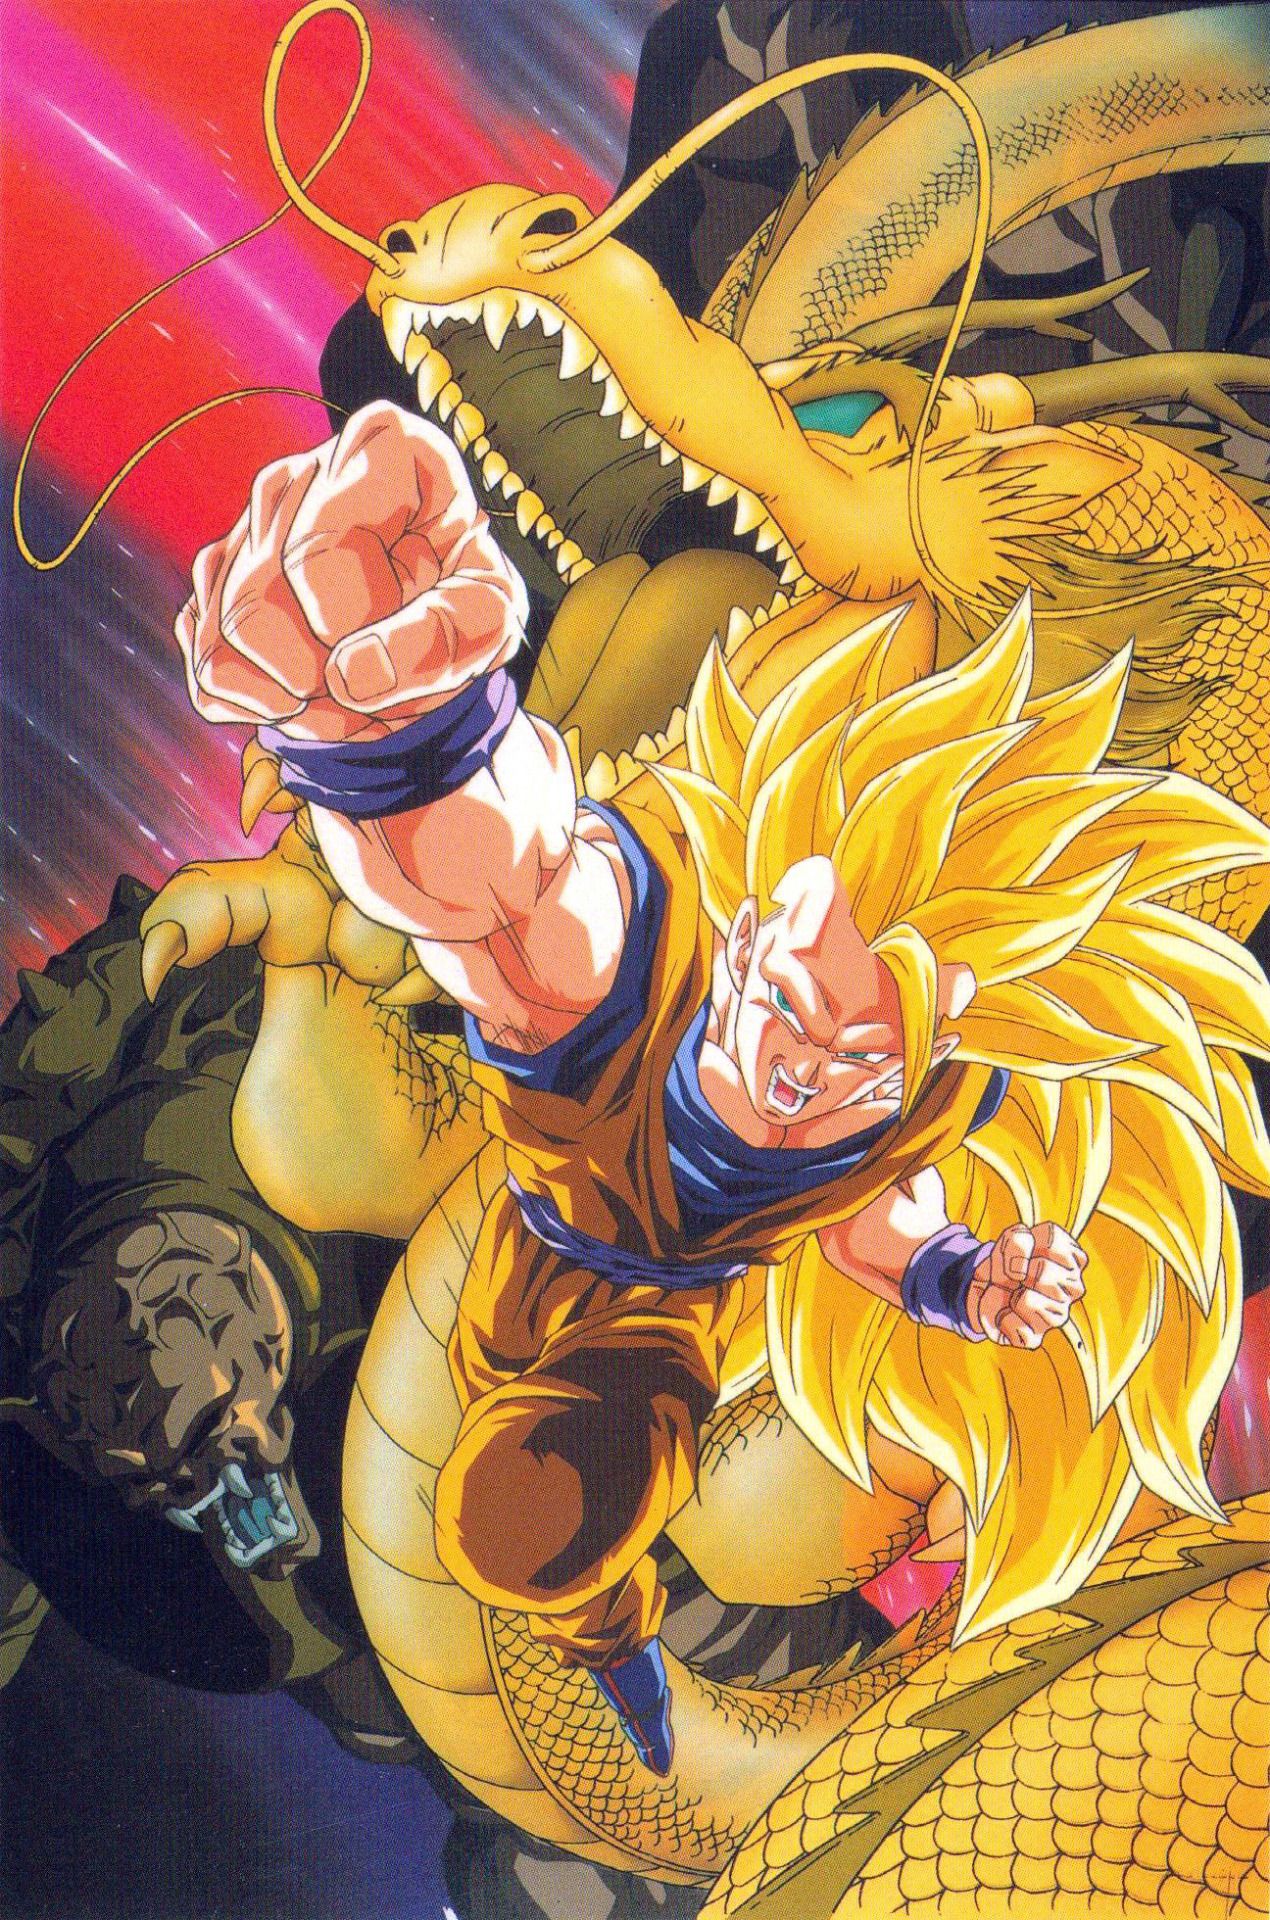 Dragon Ball Z: O Ataque do Dragão – Wikipédia, a enciclopédia livre